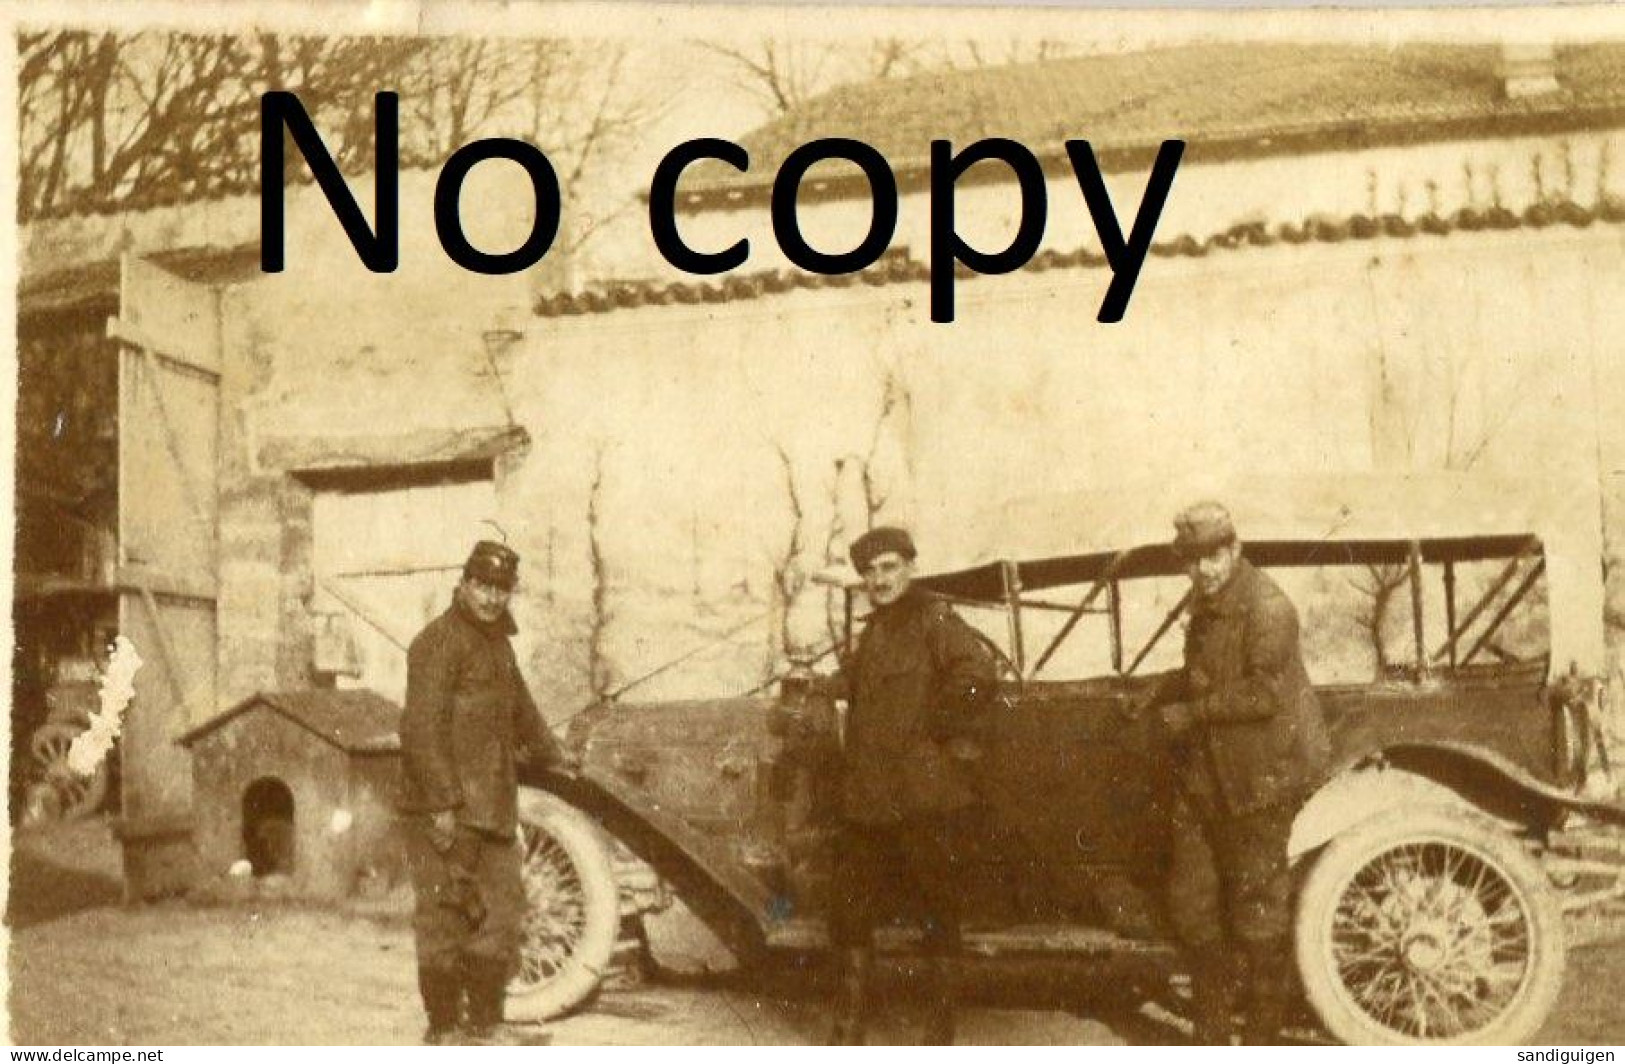 PHOTO FRANCAISE - AUTOMOBILE DE L'ETAT MAJOR A SOUILLY PRES DE LEMMES - VERDUN MEUSE - GUERRE 1914 1918 - Krieg, Militär